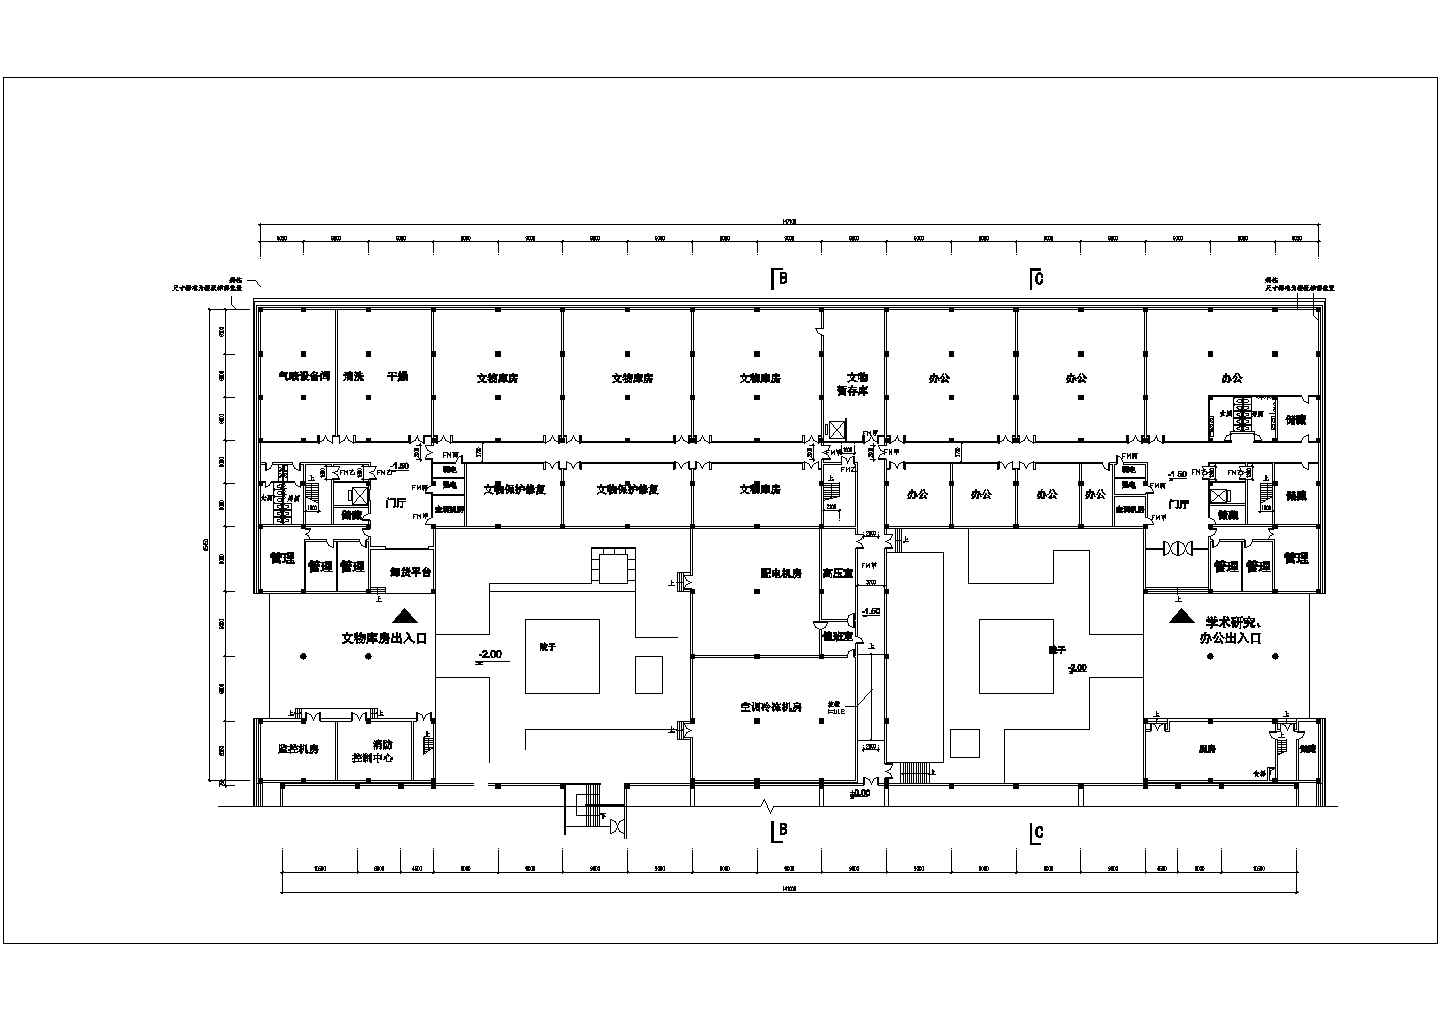 【洛阳】2层博物馆建筑设计施工图